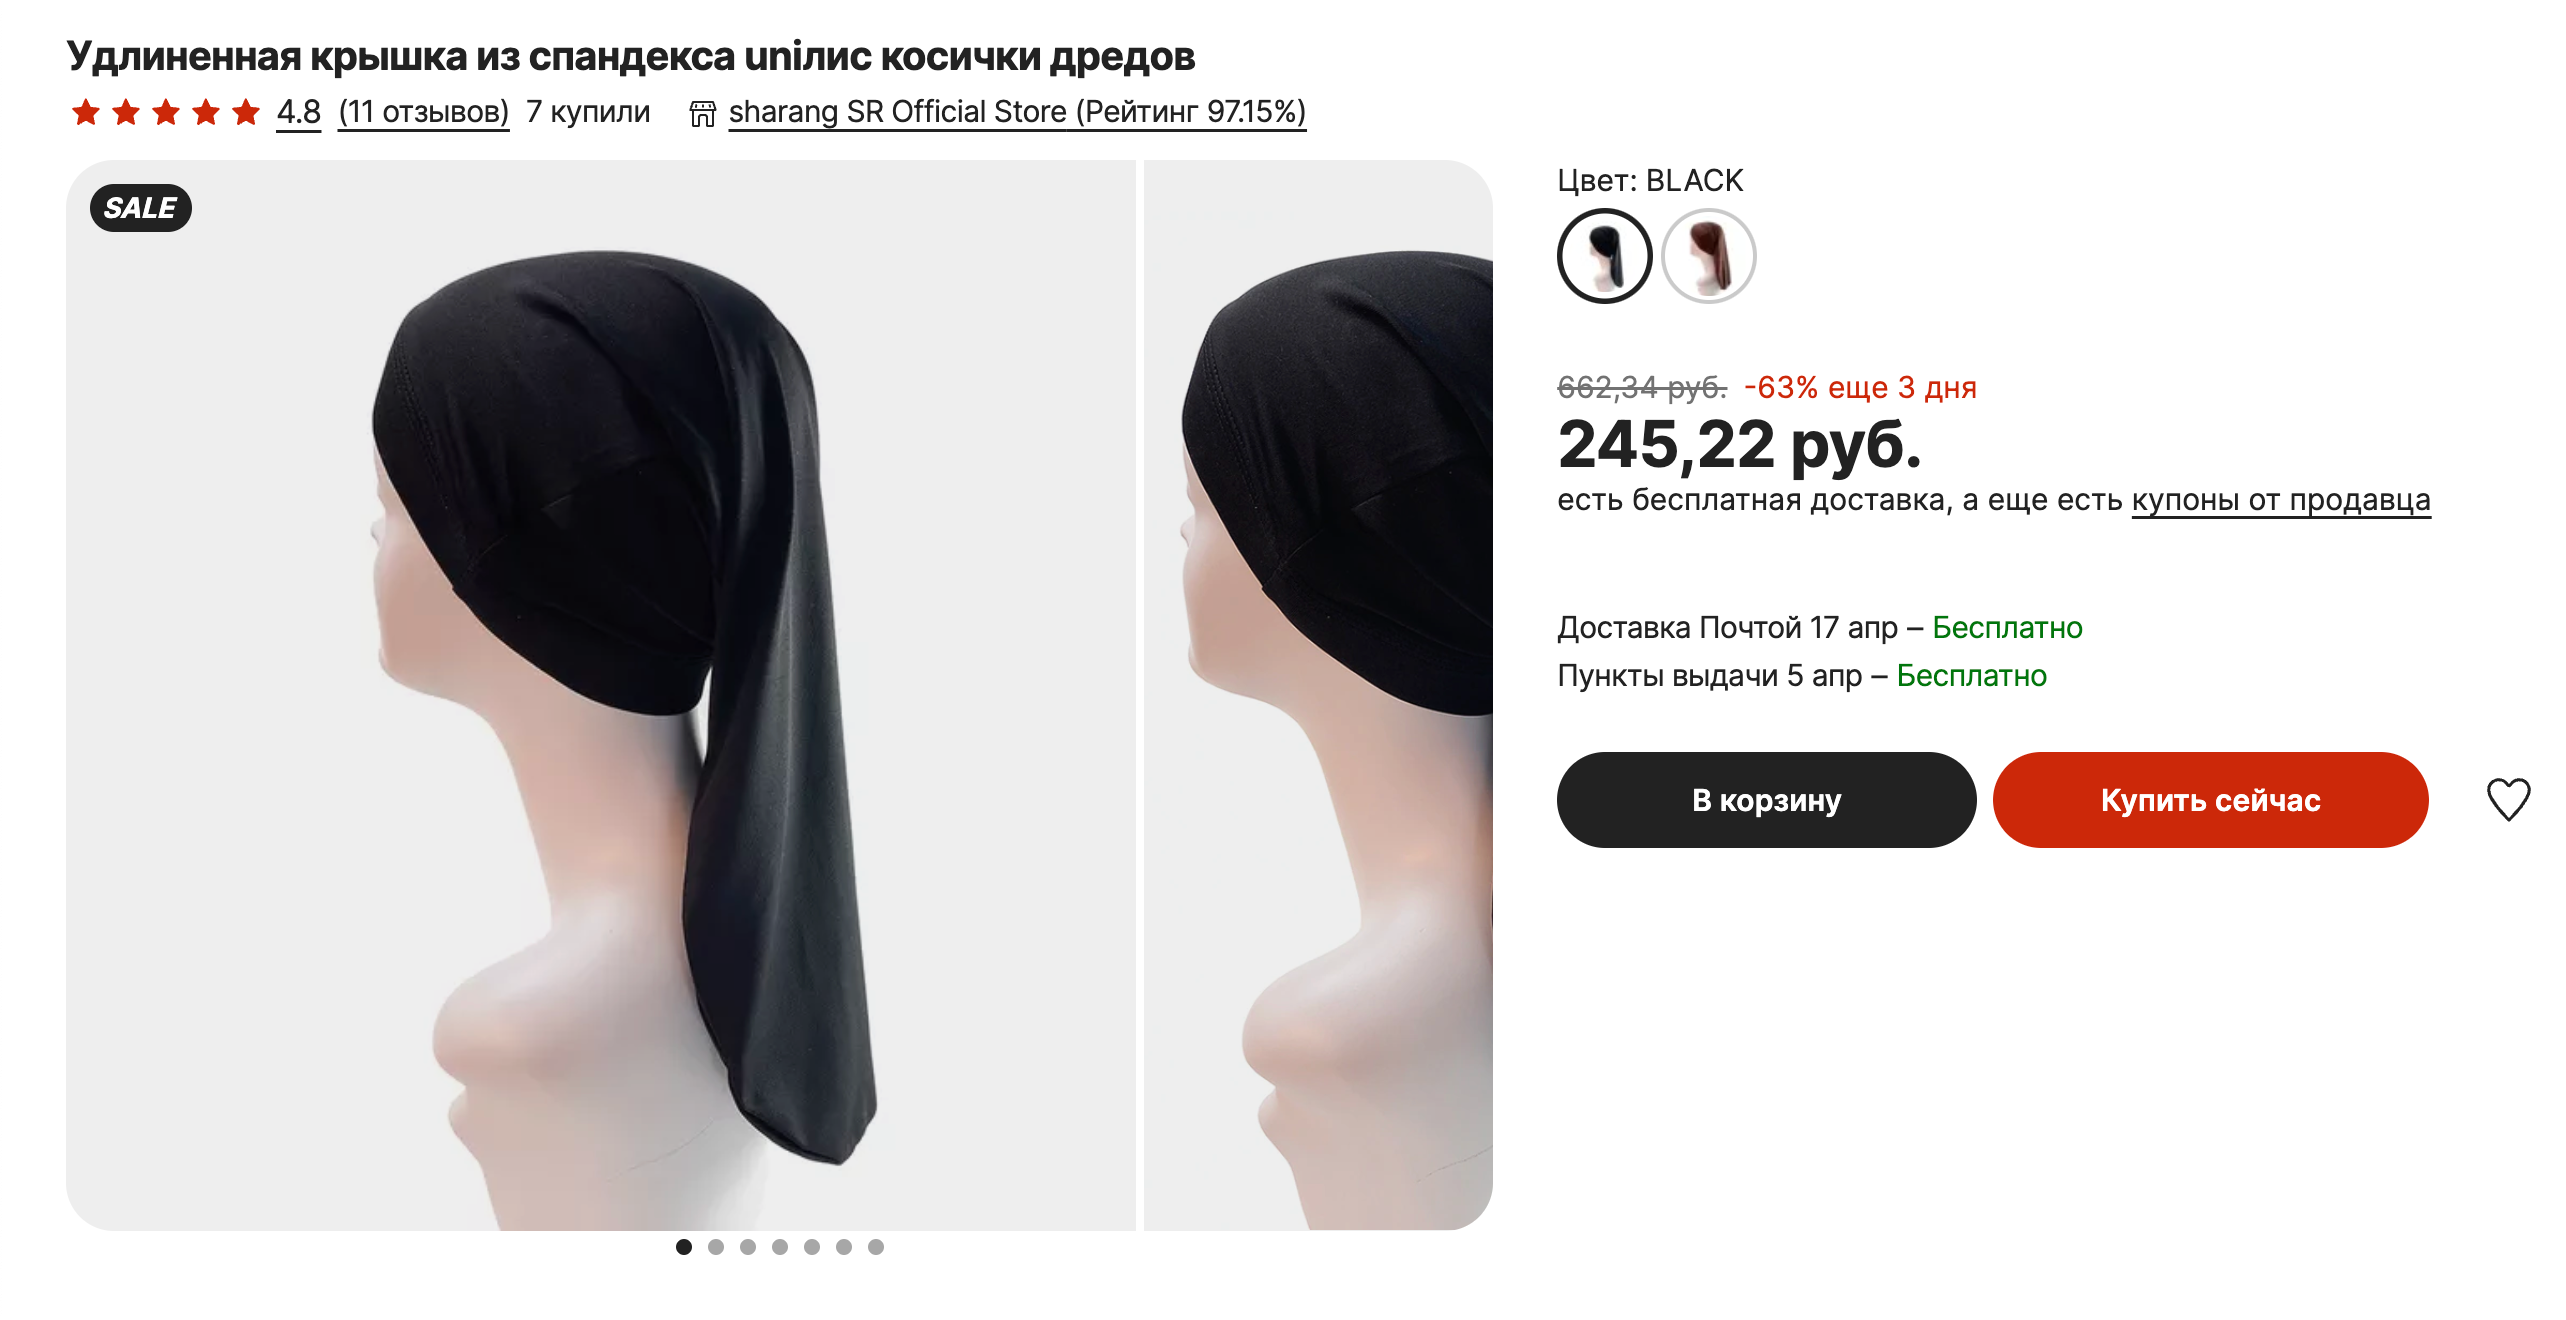 Такие шапочки для бассейна предлагает дредастым «Алиэкспресс». Но у них странная форма — мне кажется, в таких не очень удобно плавать. Источник: aliexpress.ru